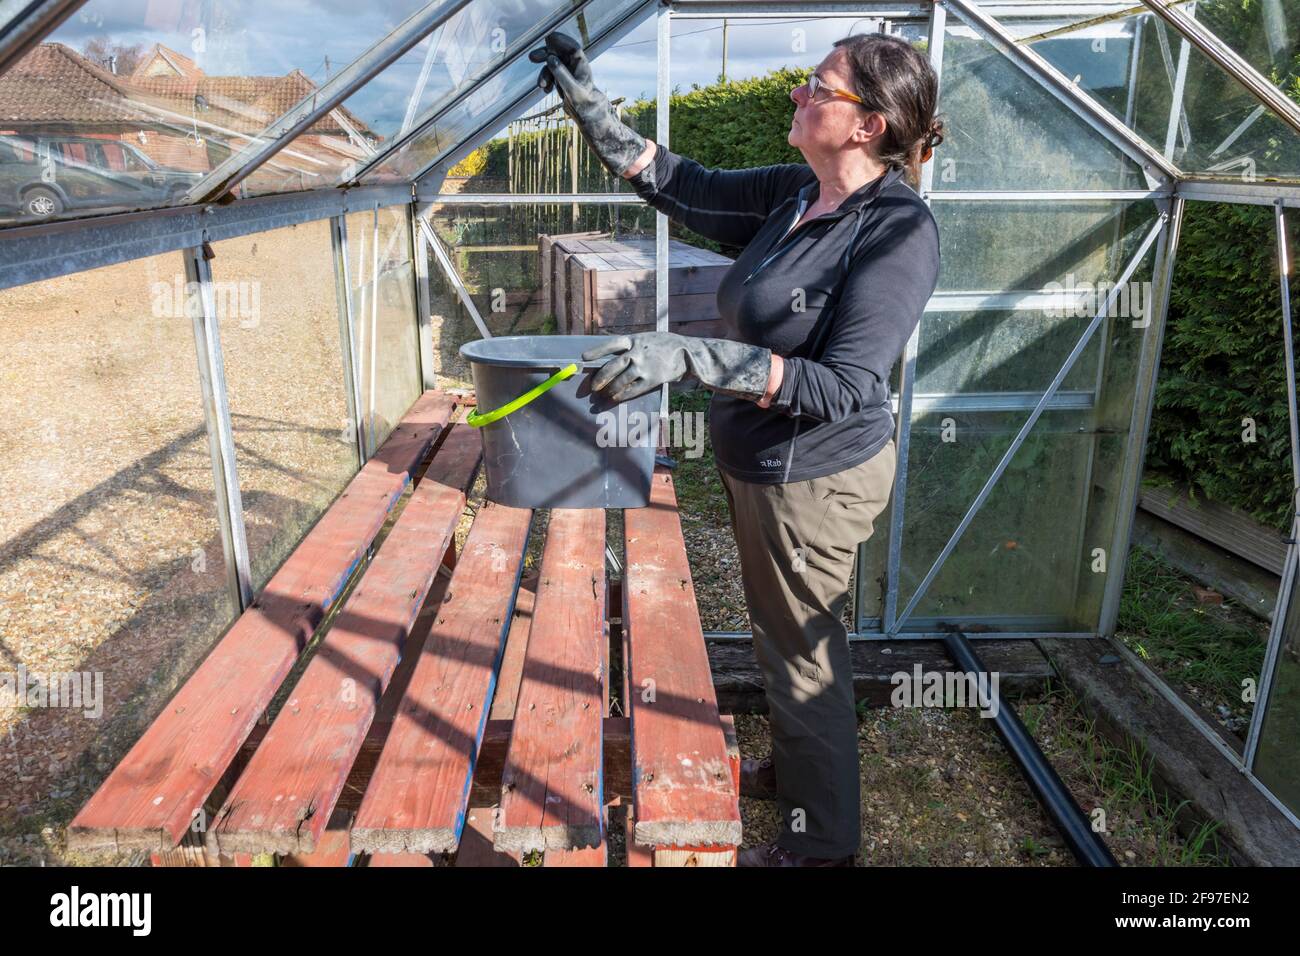 Femme en train de rénover une vieille serre. Laver, nettoyer et désinfecter le verre pour éliminer les algues avant le début d'une nouvelle saison de croissance. Banque D'Images